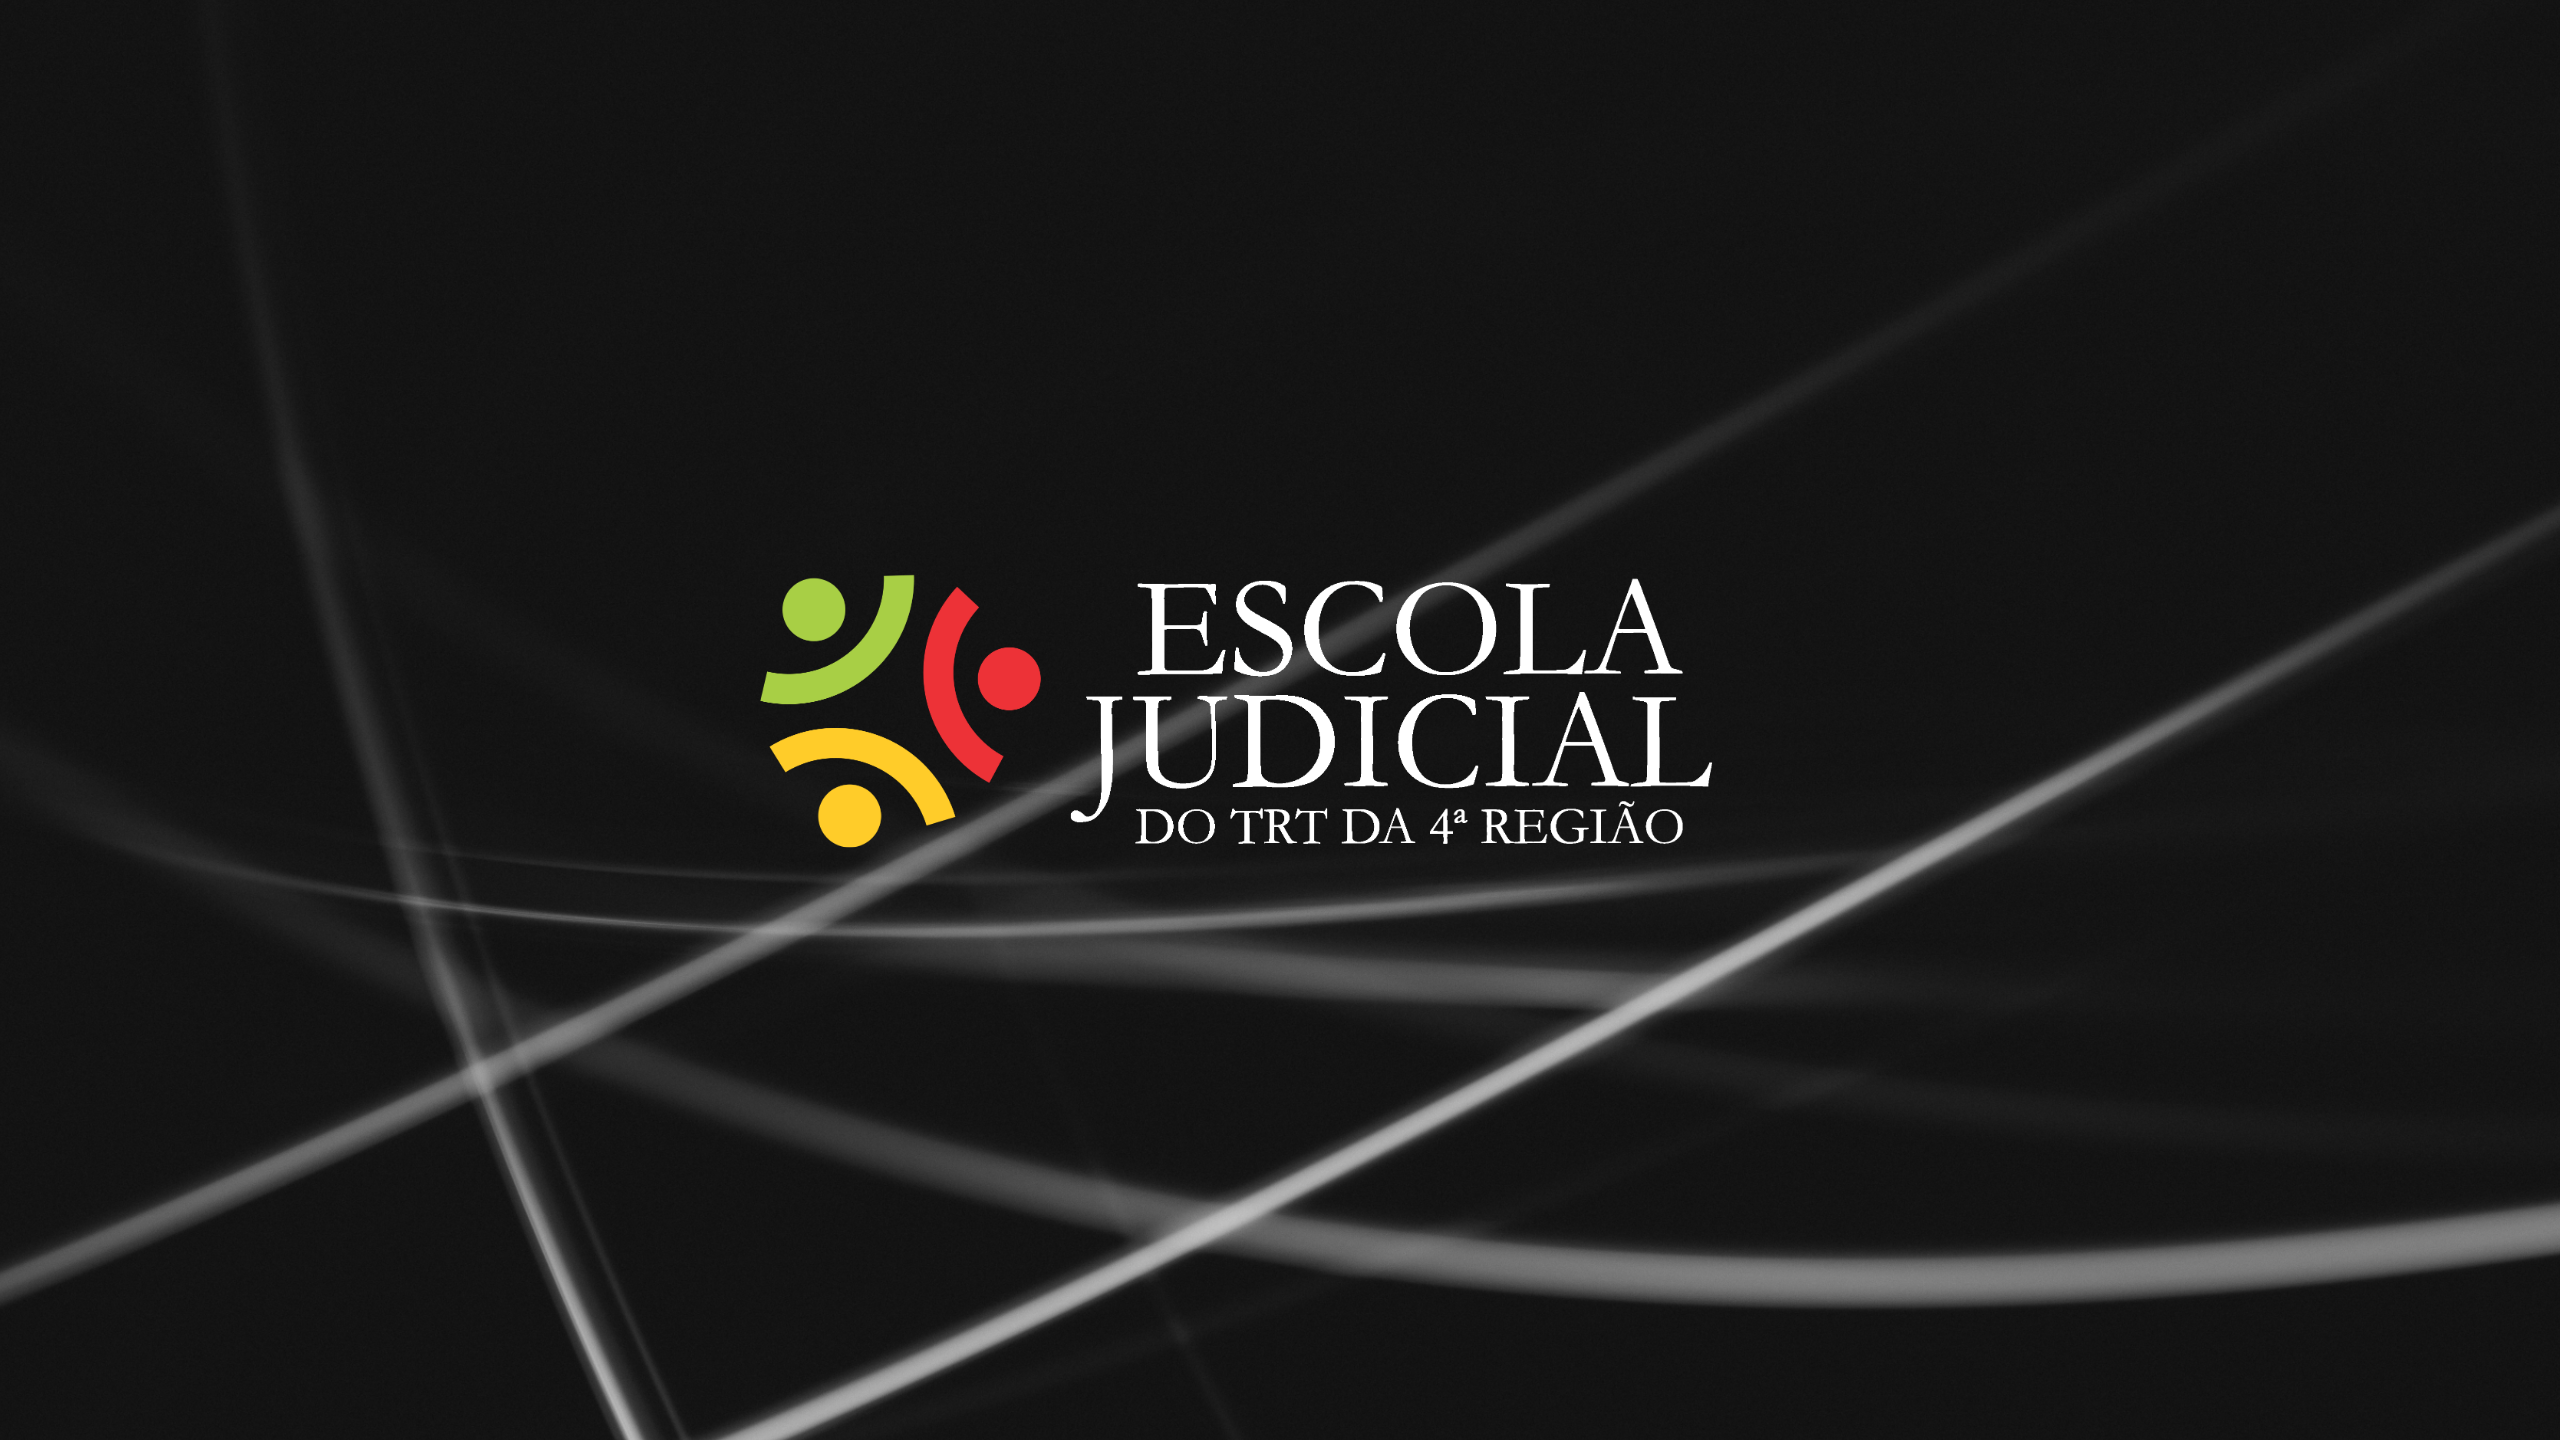 Logotipo da Escola Judicial do TRT4 em fundo preto.